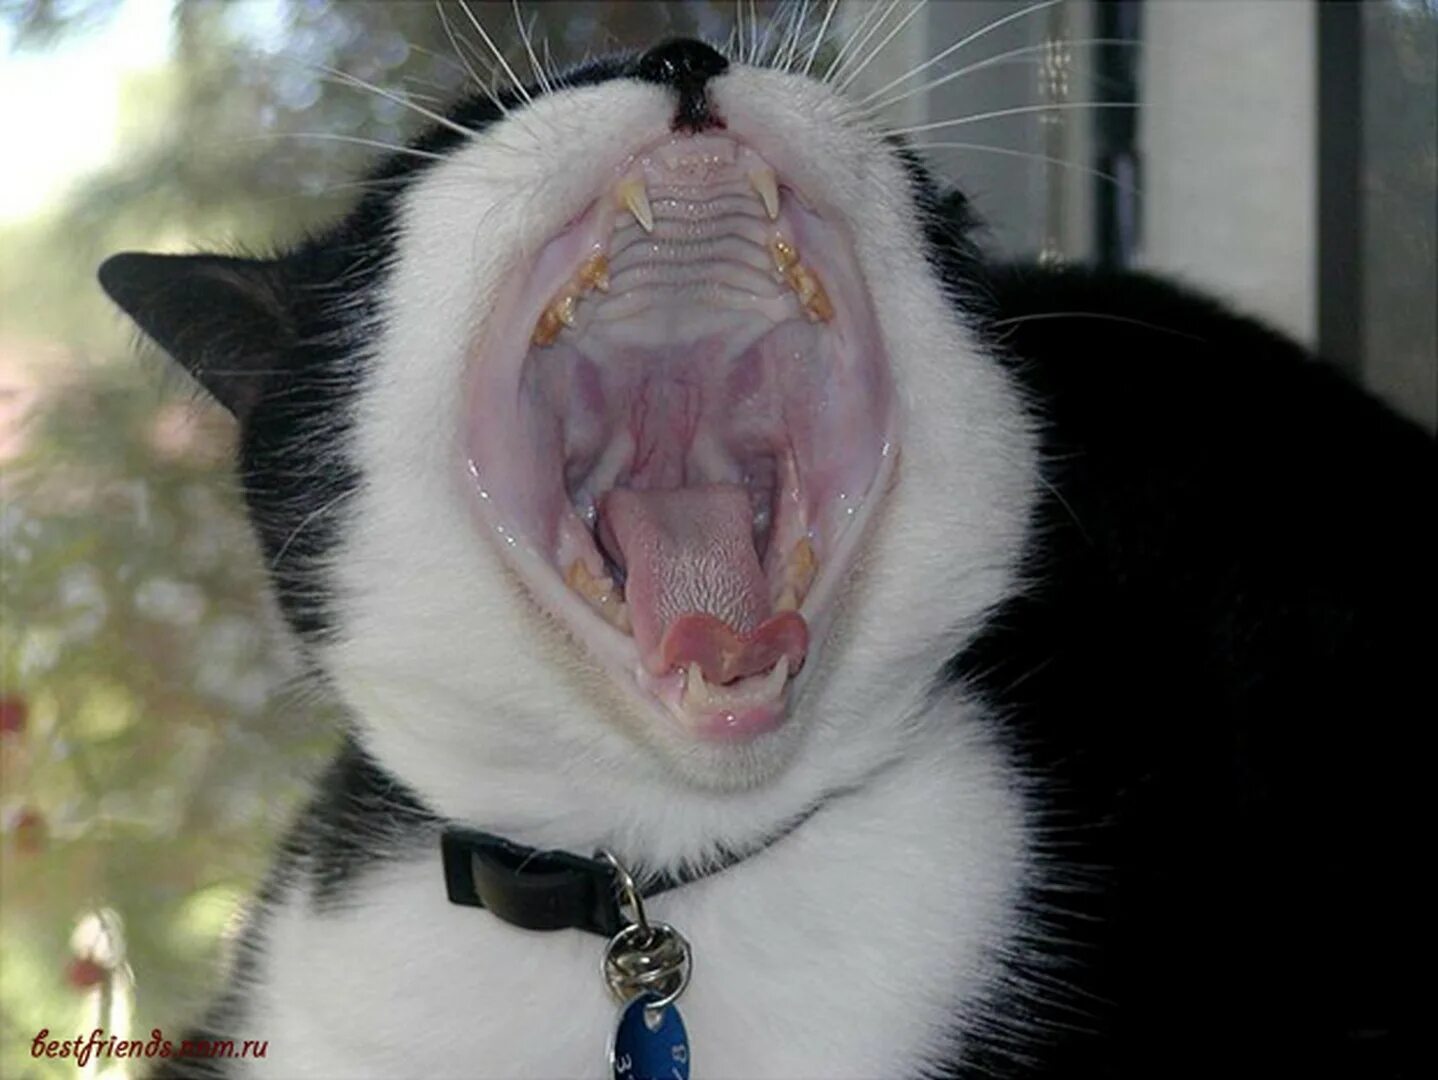 Кот зевает. Кот широко зевнул. Желтая пасть